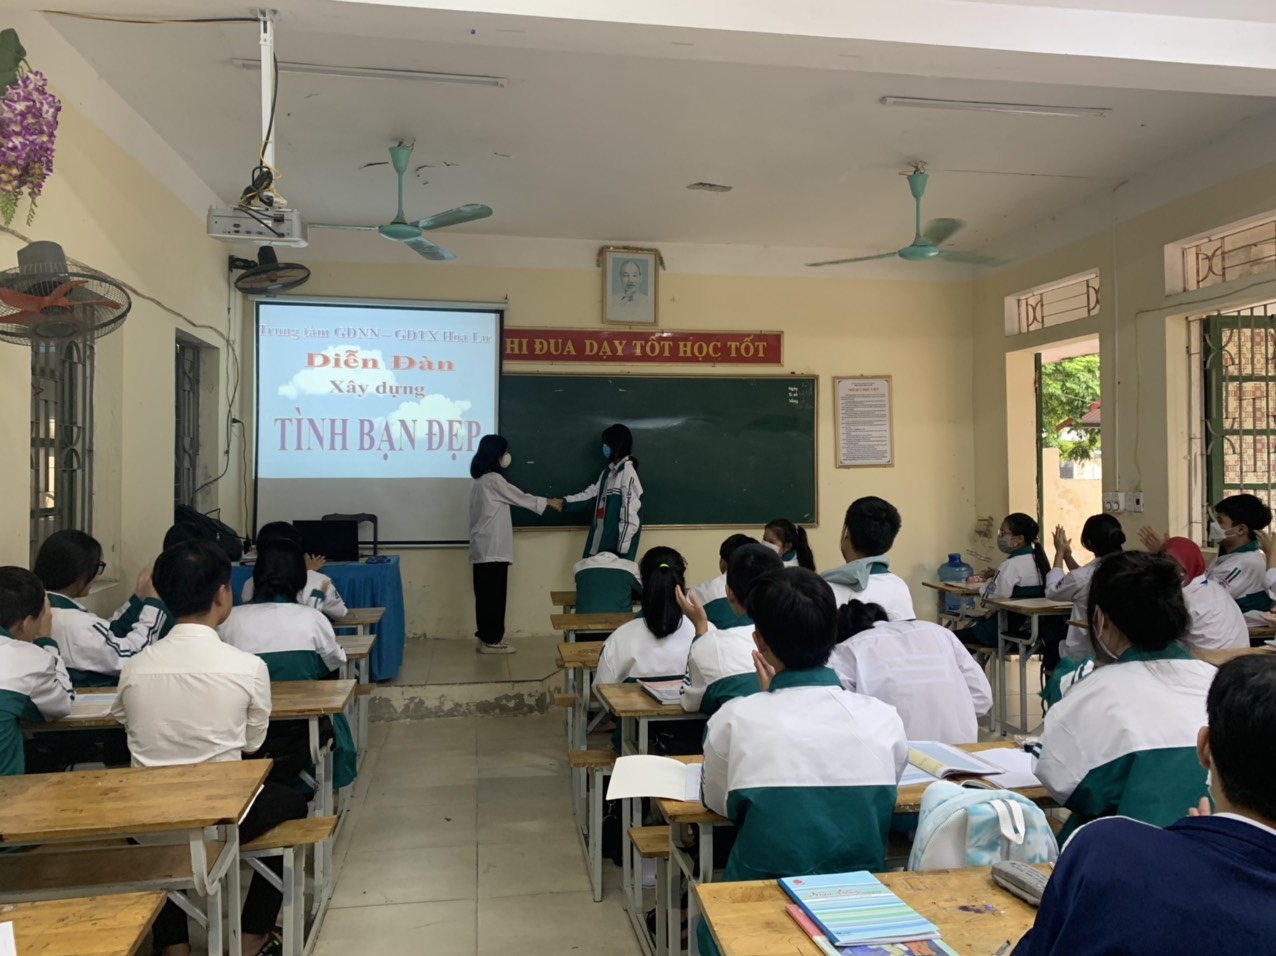 Trung tâm GDNN – GDTX huyện Hoa Lư tổ chức diễn đàn “Xây dựng tình bạn đẹp – Nói không với bạo lực học đường”